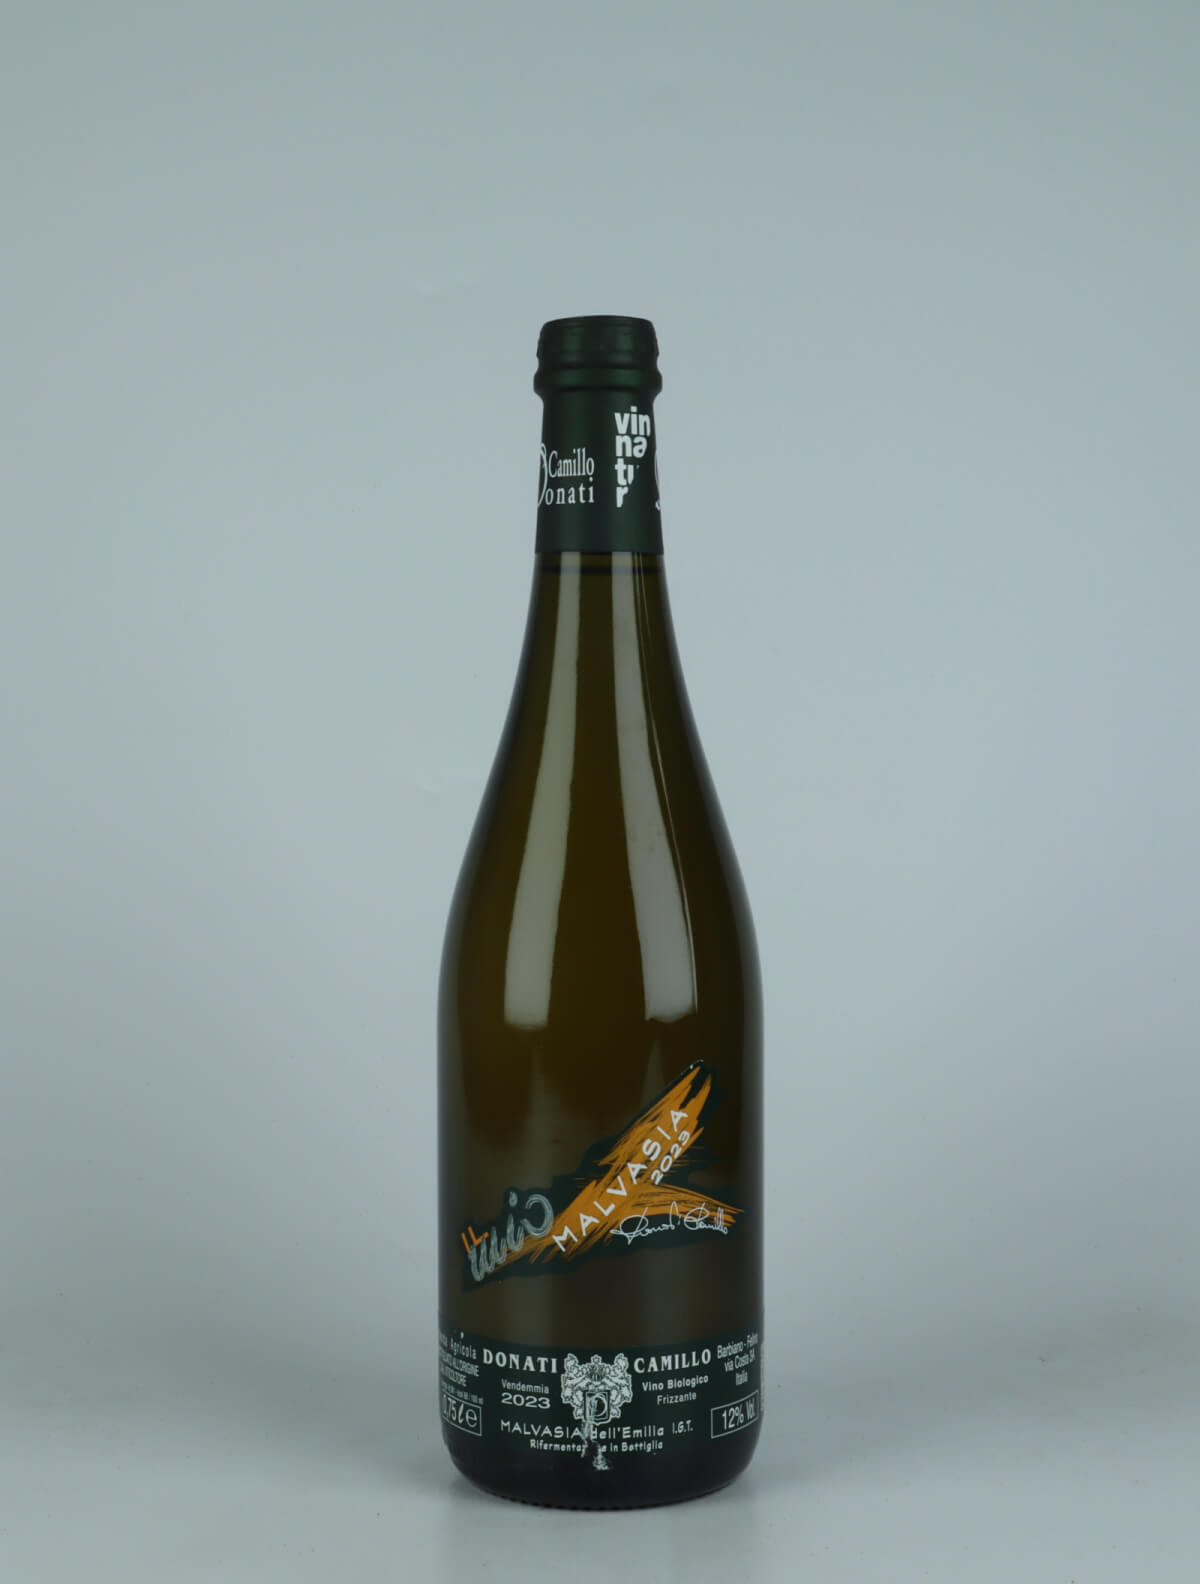 A bottle 2023 Malvasia Frizzante Sparkling from Camillo Donati, Emilia-Romagna in Italy